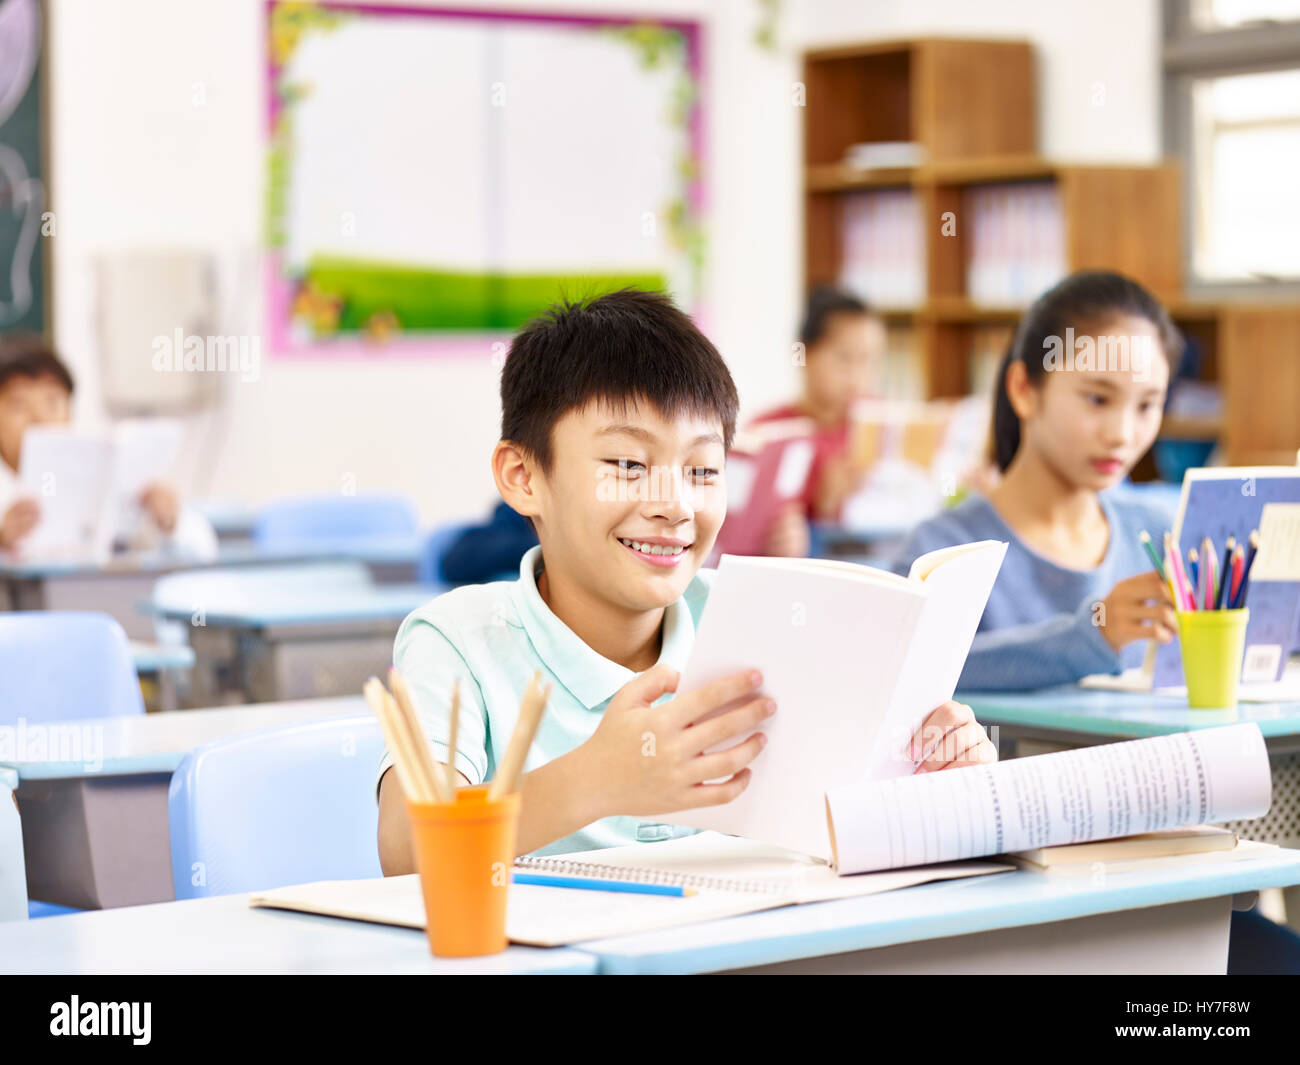 Los alumnos de la escuela elemental de asia libro de lectura en el aula, feliz y sonriente. Foto de stock